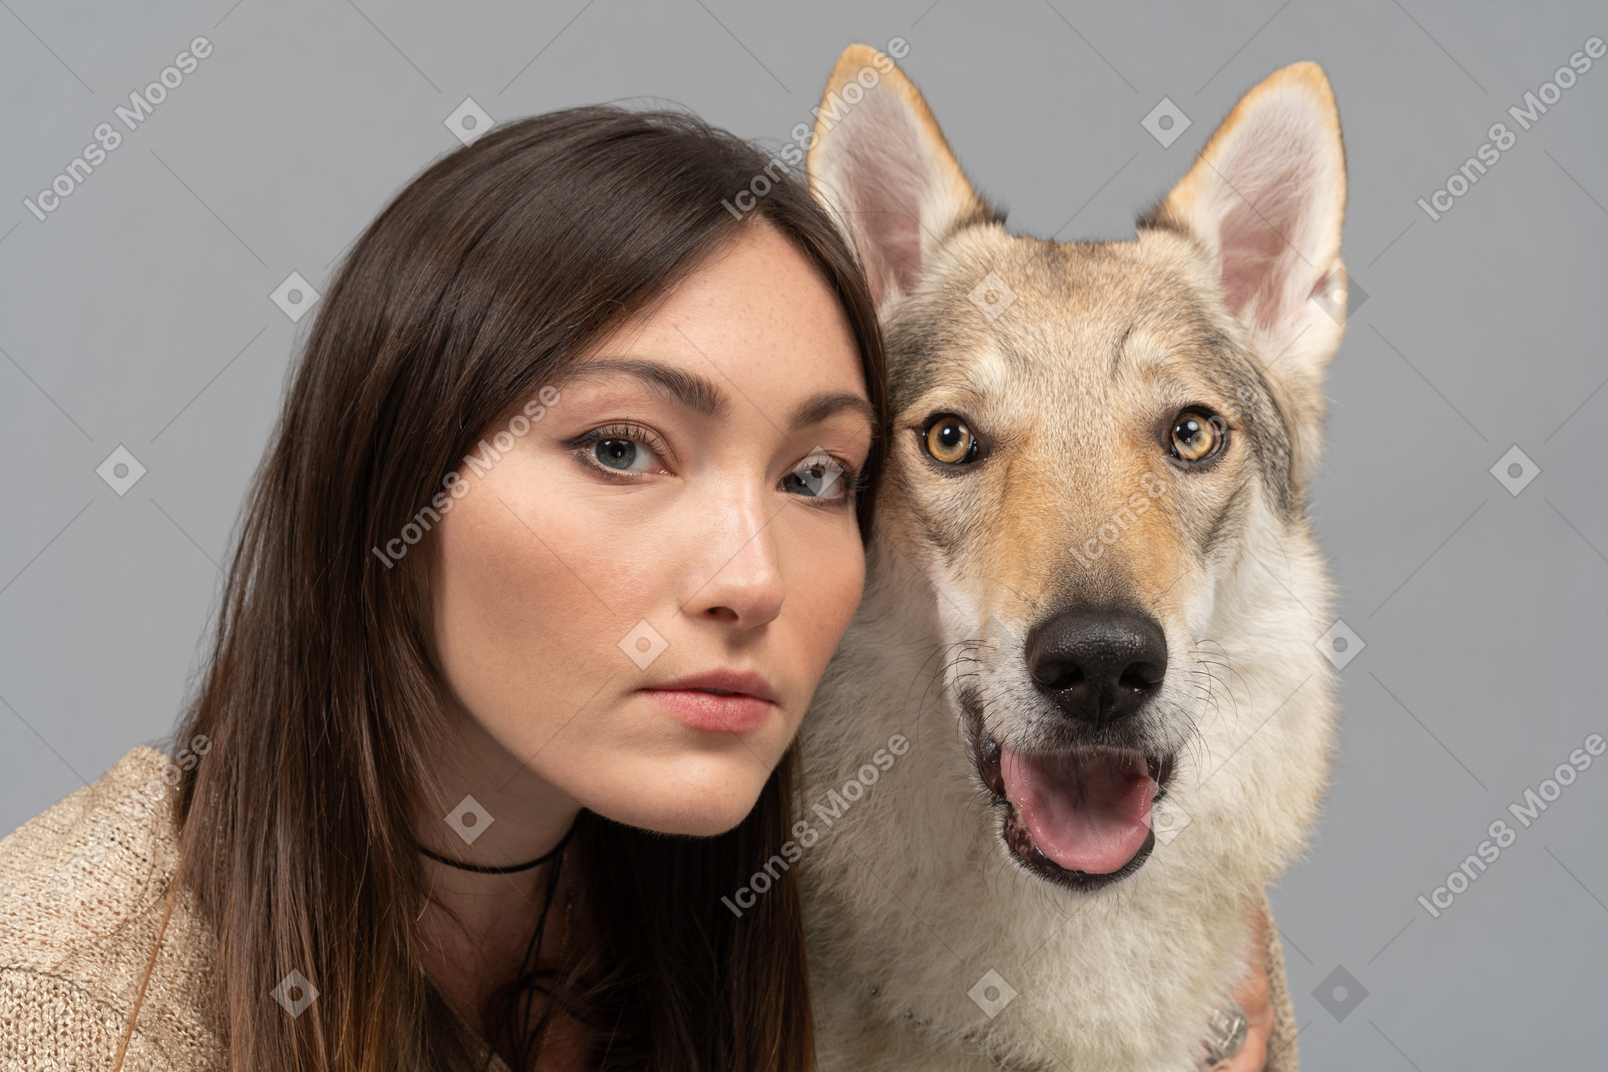 Mujer joven y perro de raza pura mirando a la cámara